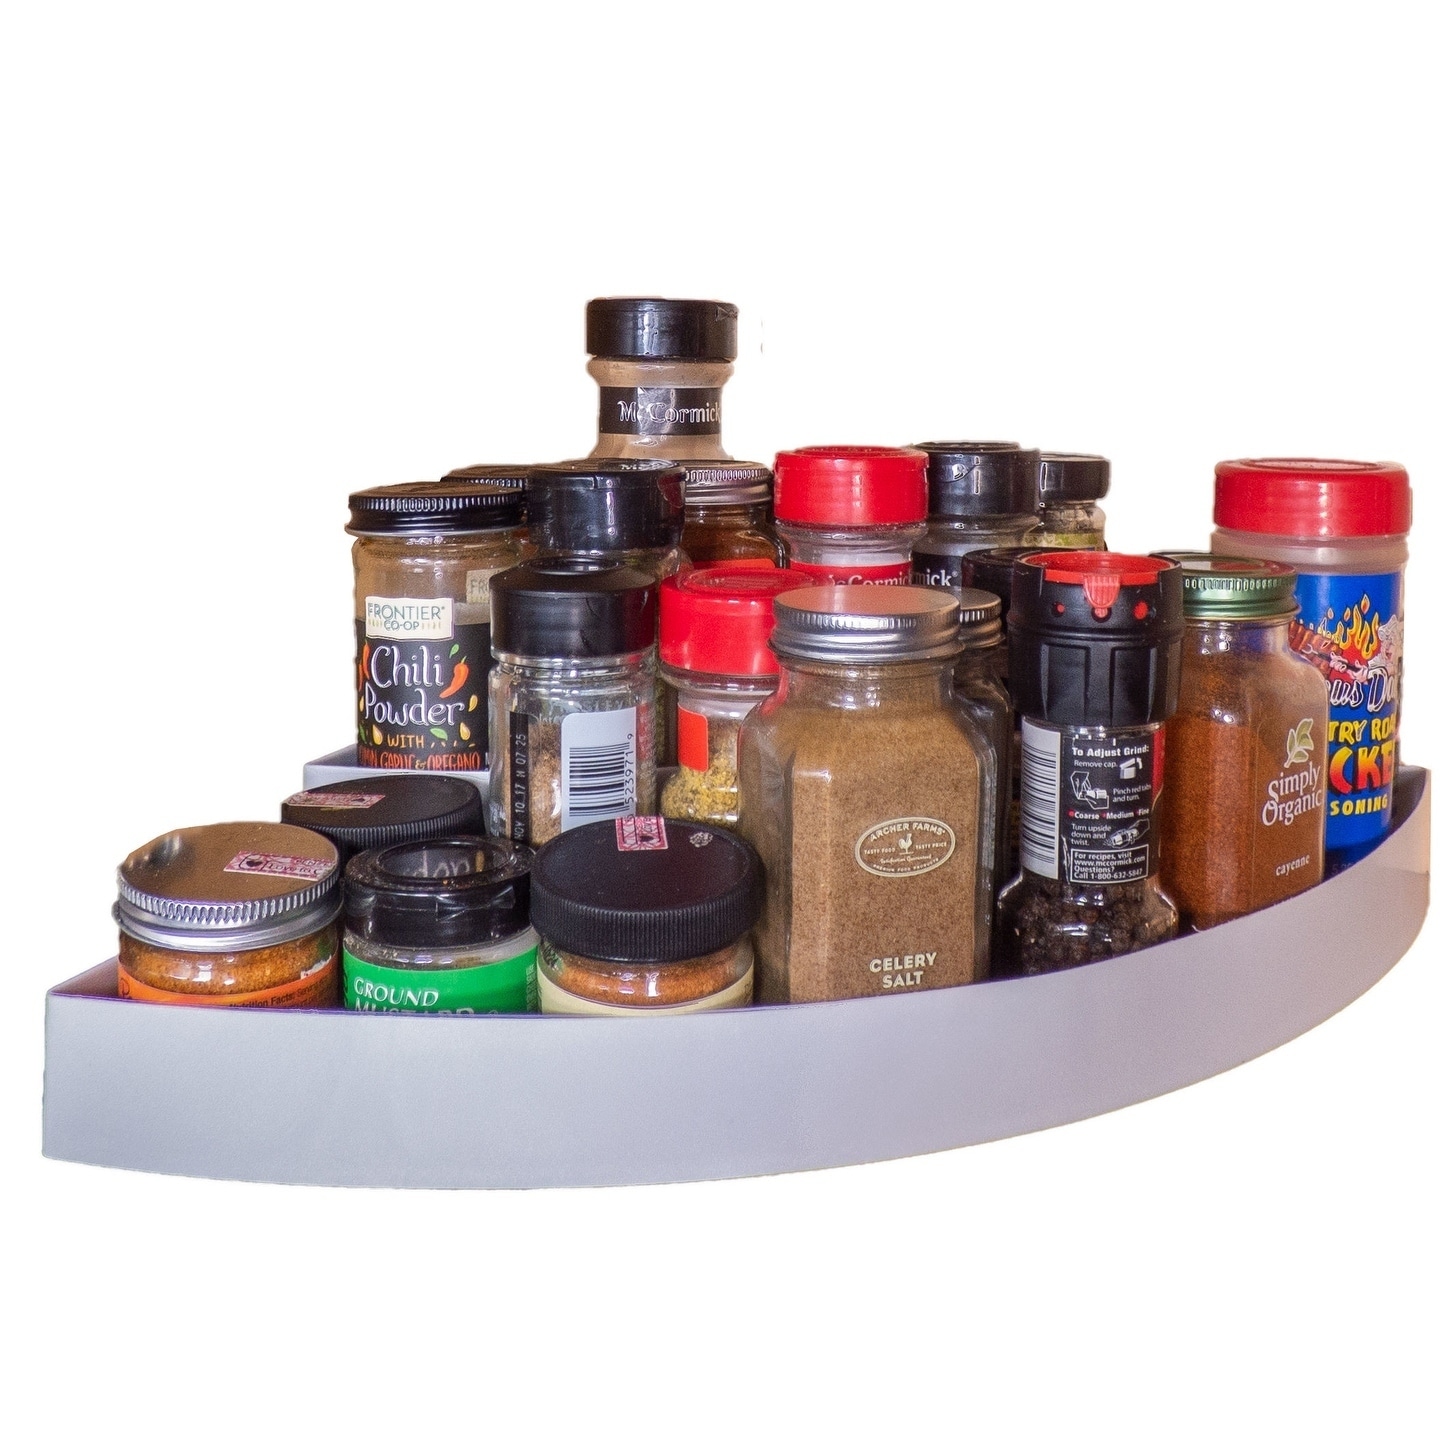 Non Slip 3 Tier Spice Rack Step Shelf Organizer - For Kitchen